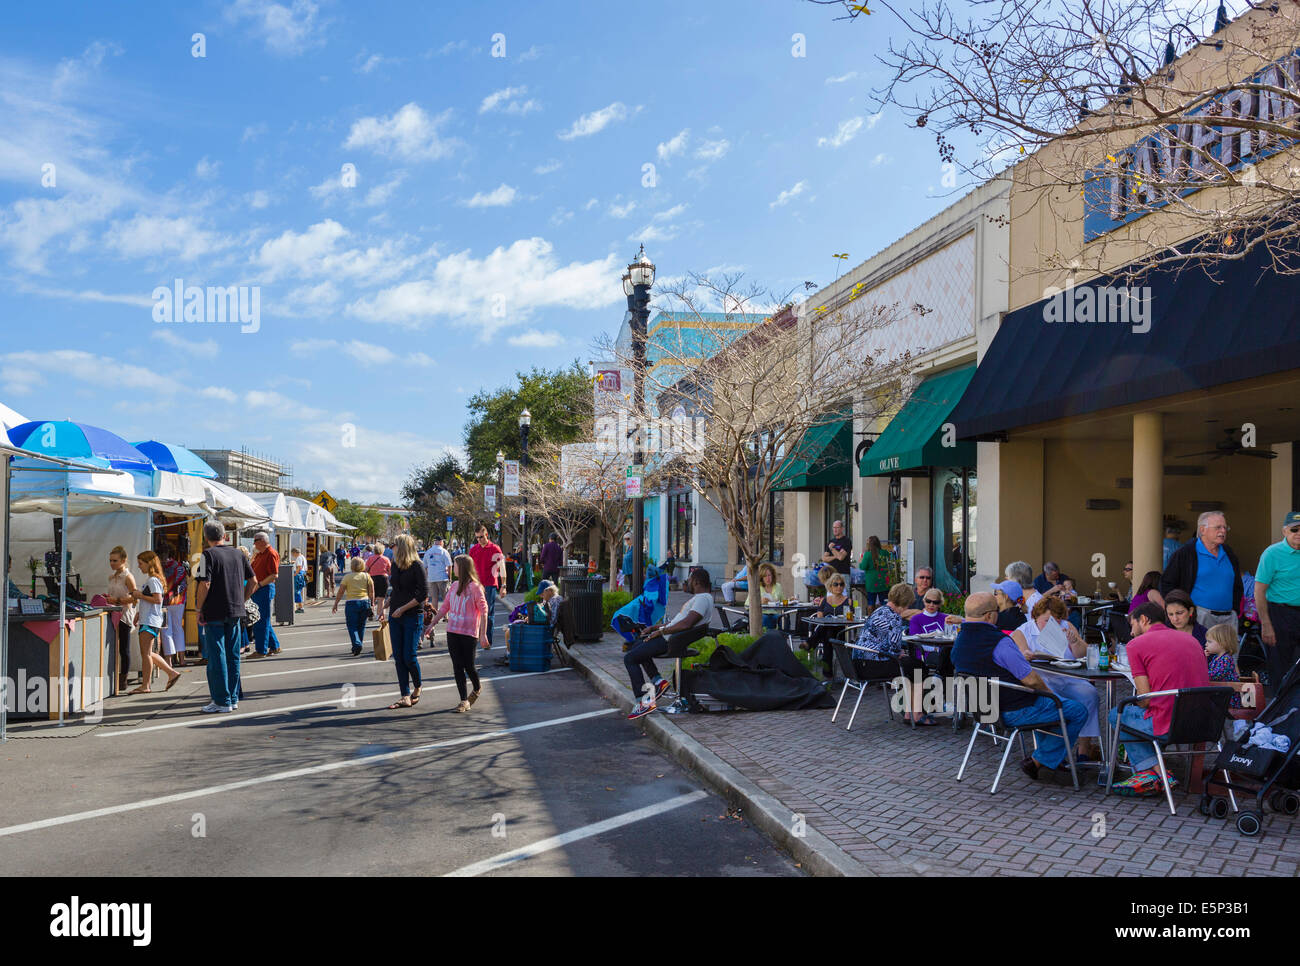 El distrito de San Marcos de Jacksonville durante el Festival de Arte de San Marcos, en noviembre de 2013, Florida, EE.UU. Foto de stock